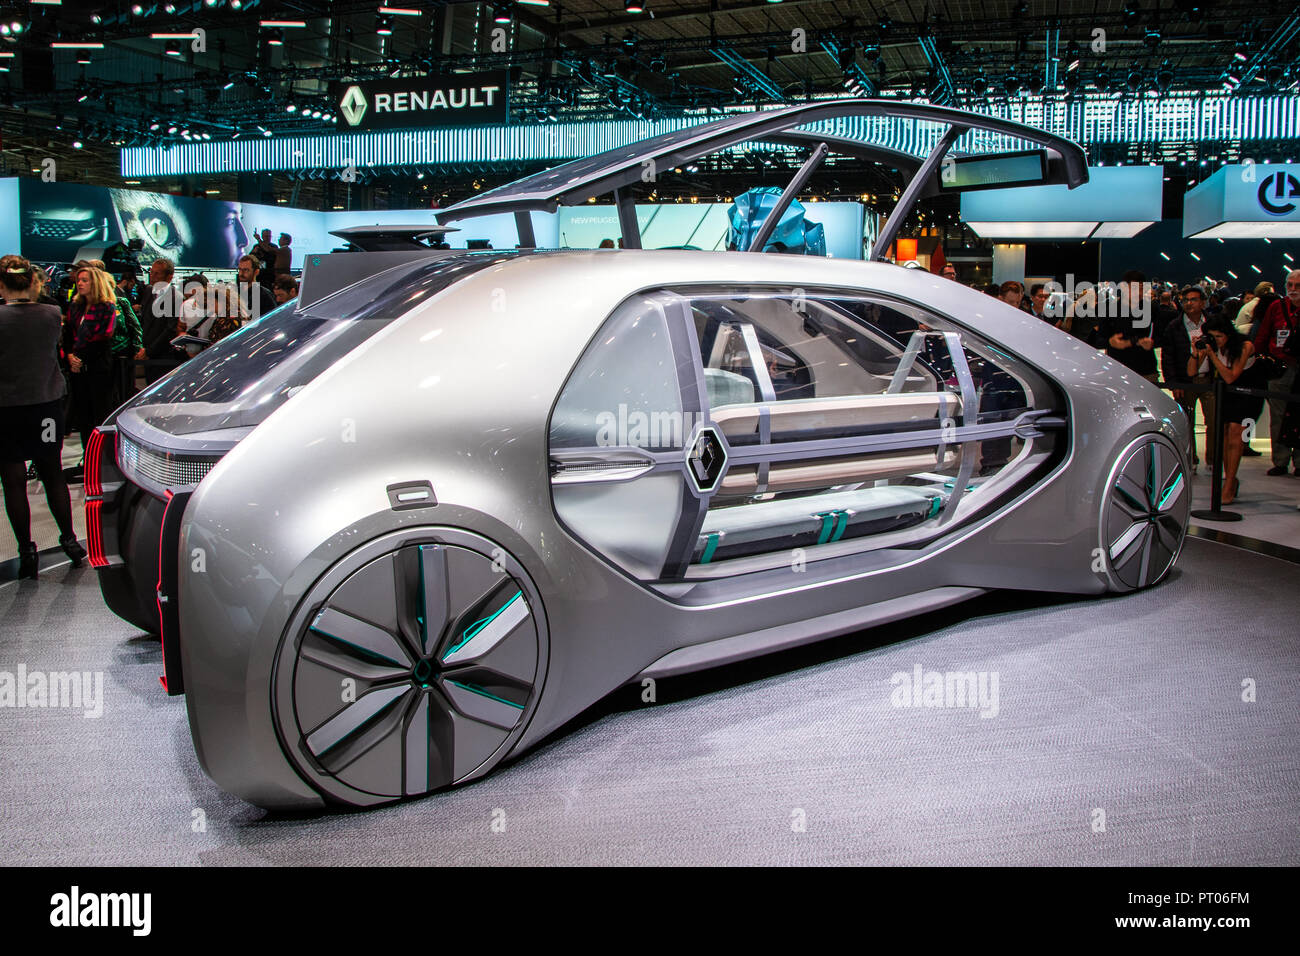 PARIS - OCT 2, 2018: Renault EZ-GO autonomous taxi concept car showcased at the Paris Motor Show. Stock Photo